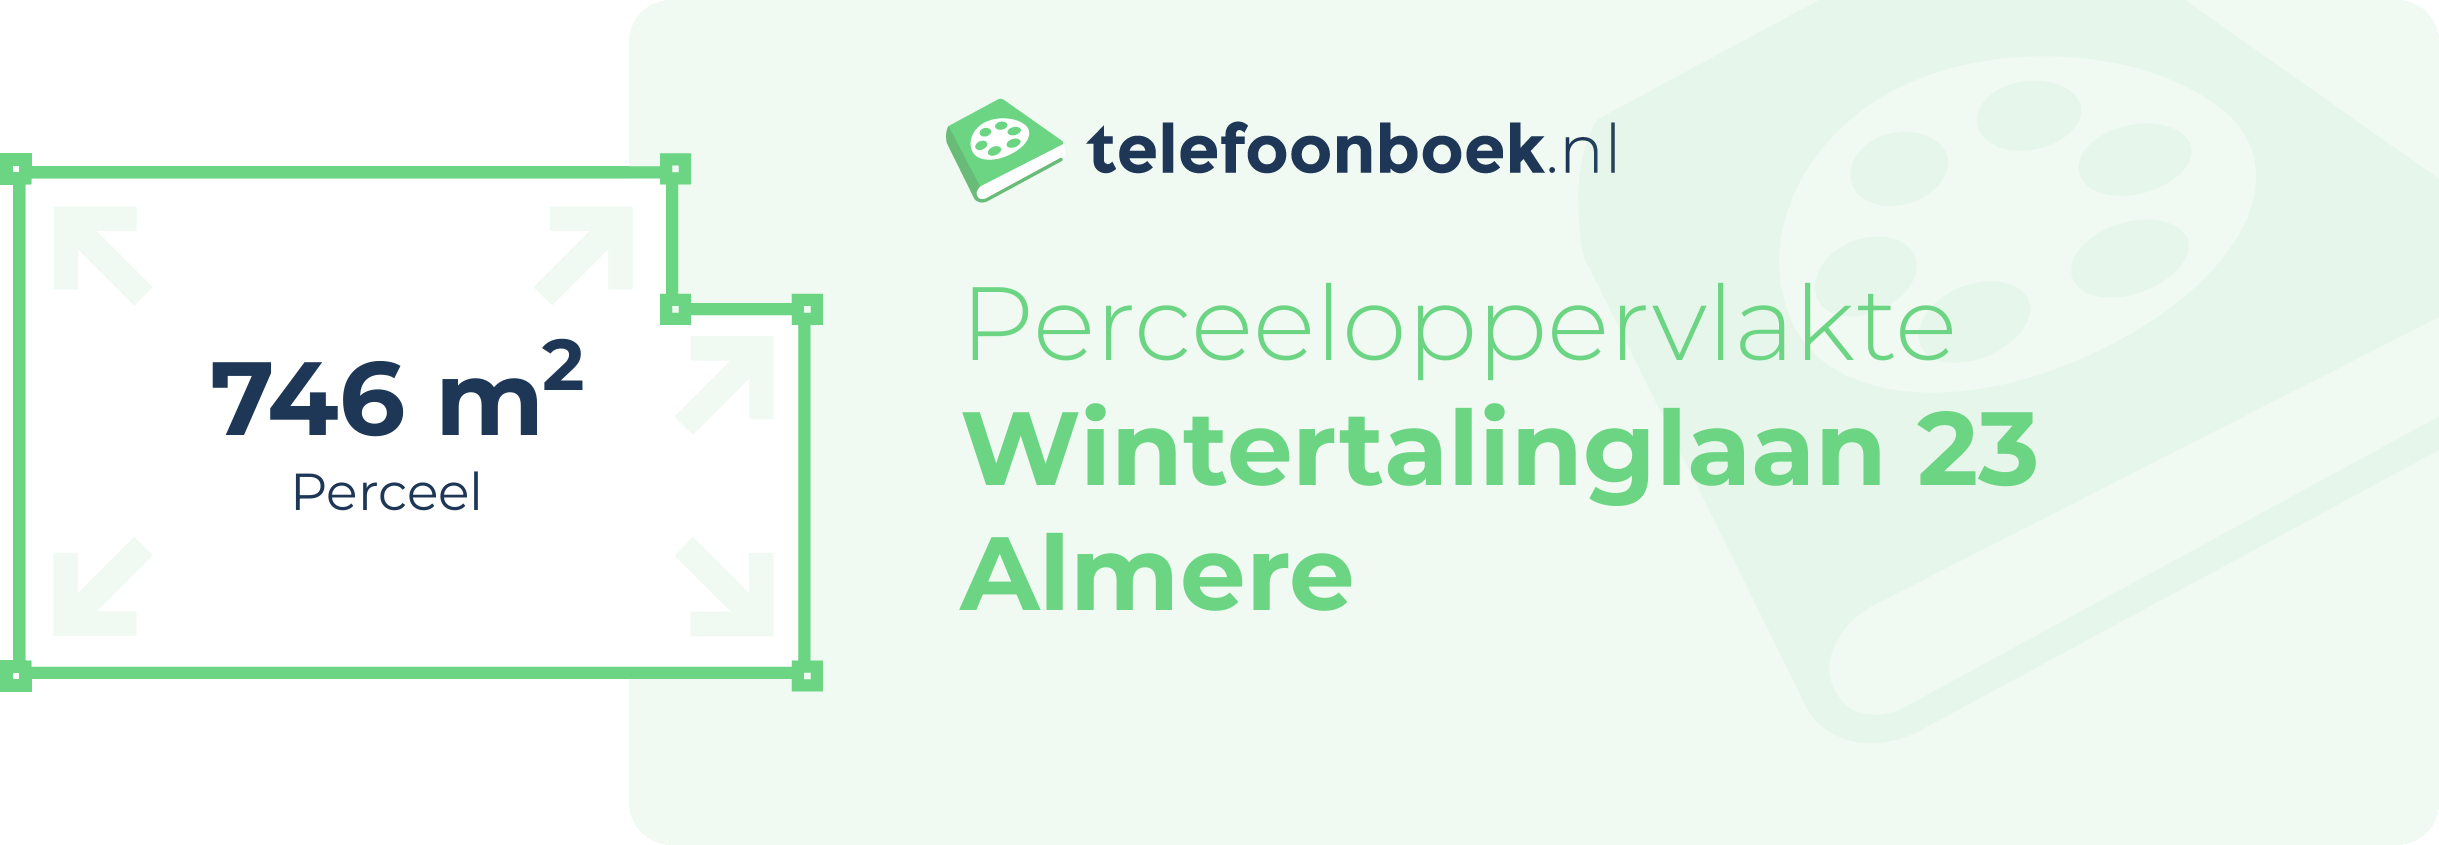 Perceeloppervlakte Wintertalinglaan 23 Almere